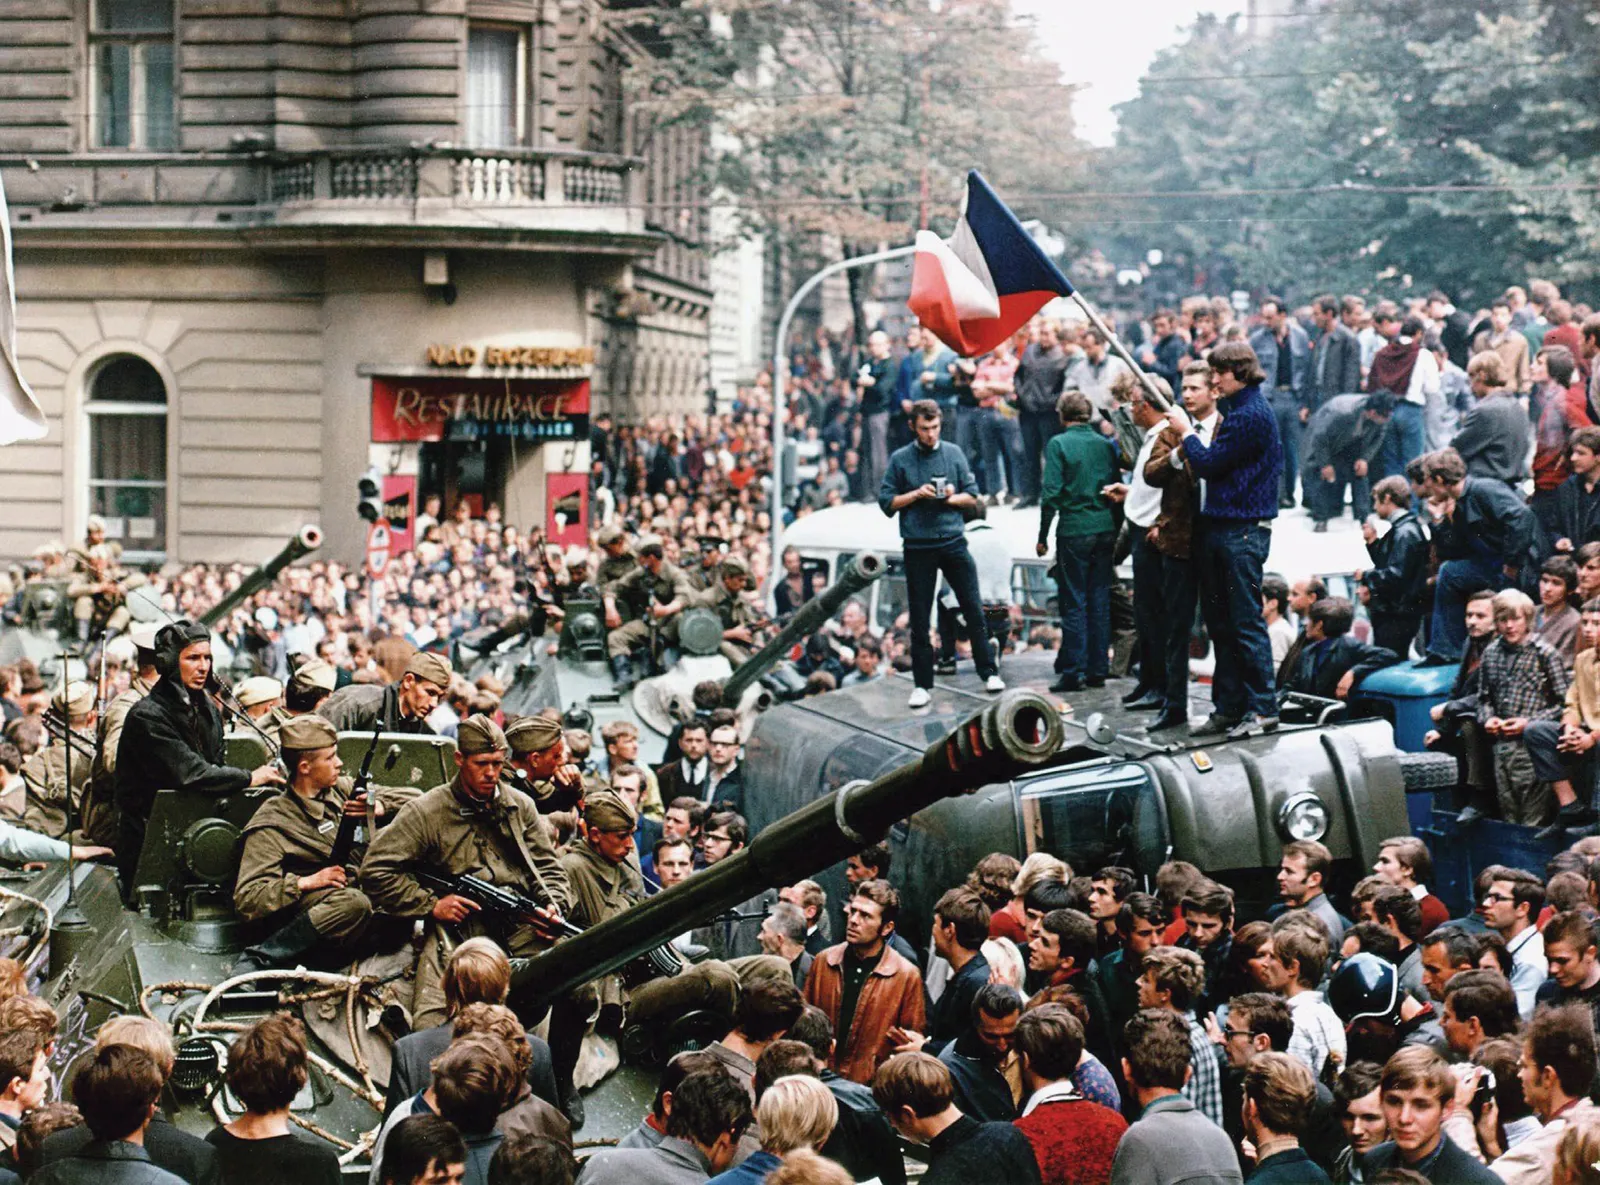 okupácia čssr vojskami varšavskej dohody 1968